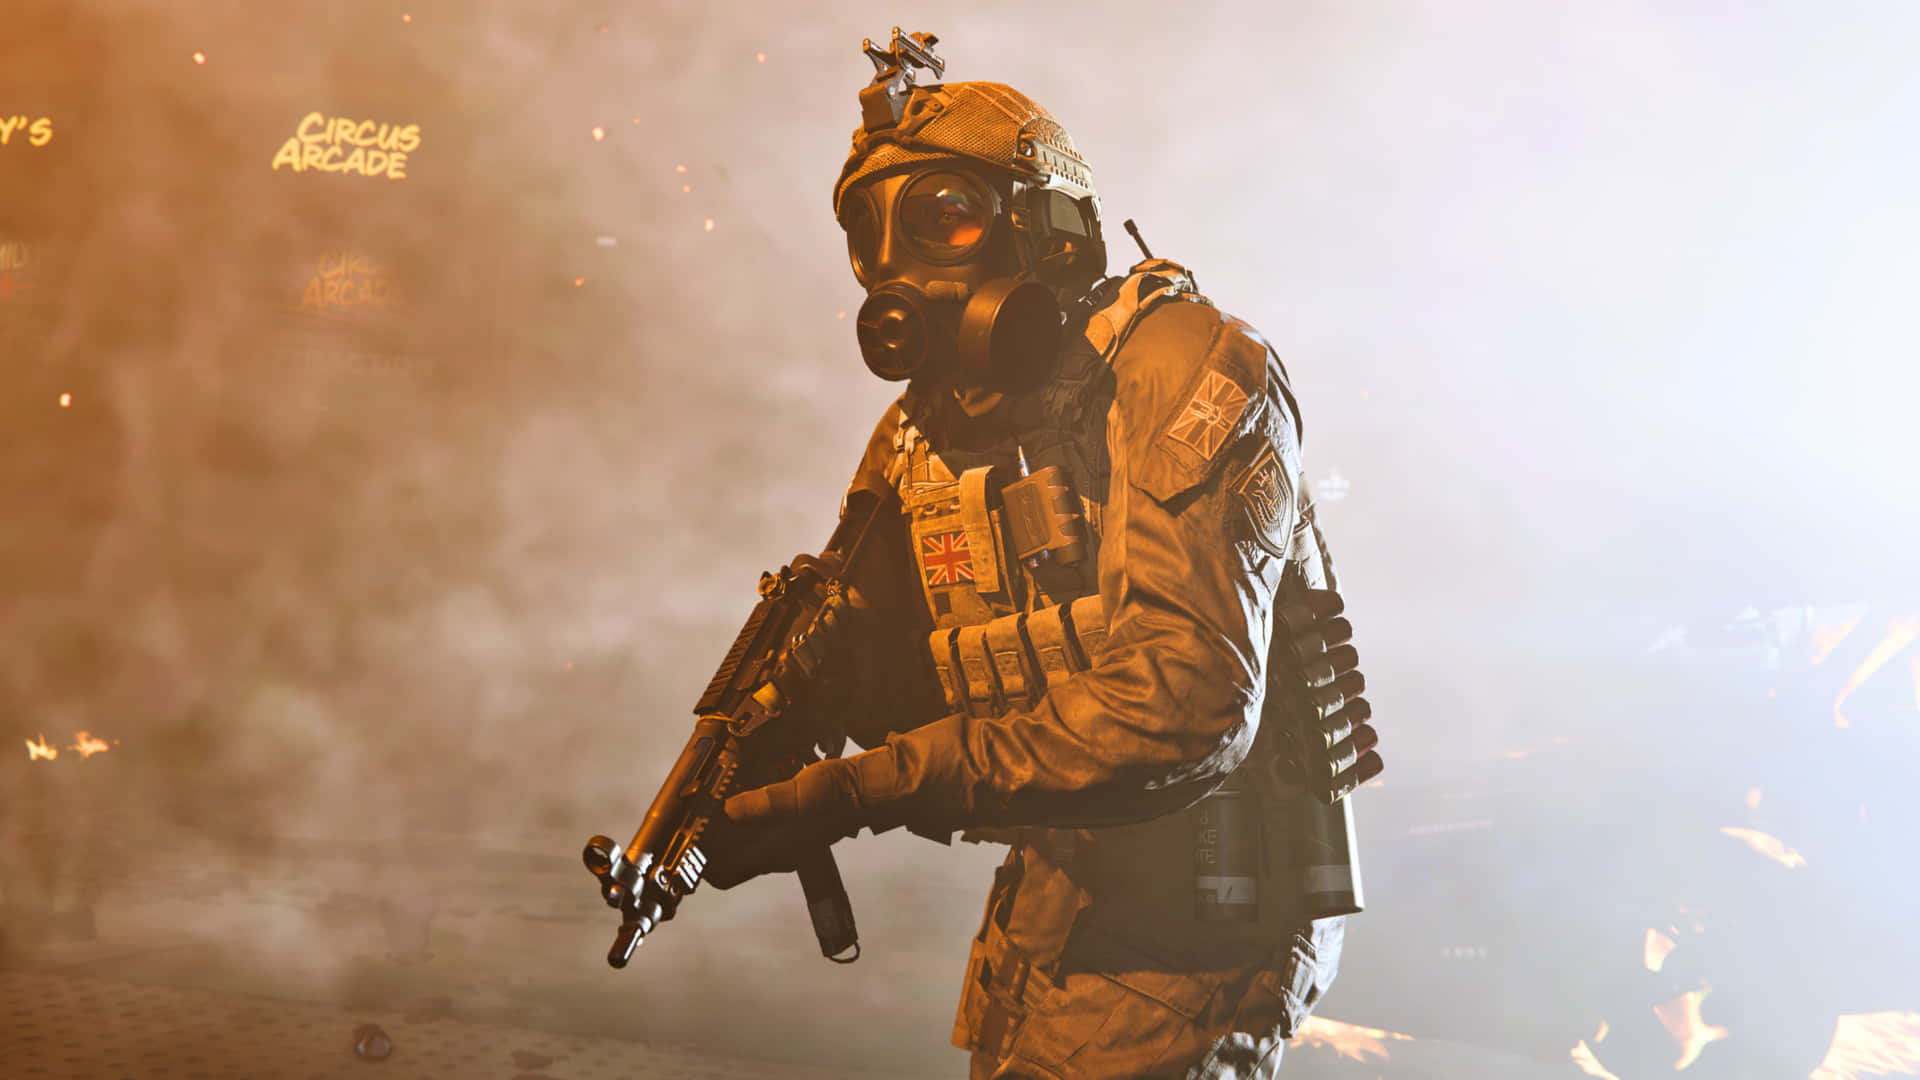 Soldatisul Campo Di Battaglia Nel Famoso Call Of Duty: Modern Warfare.